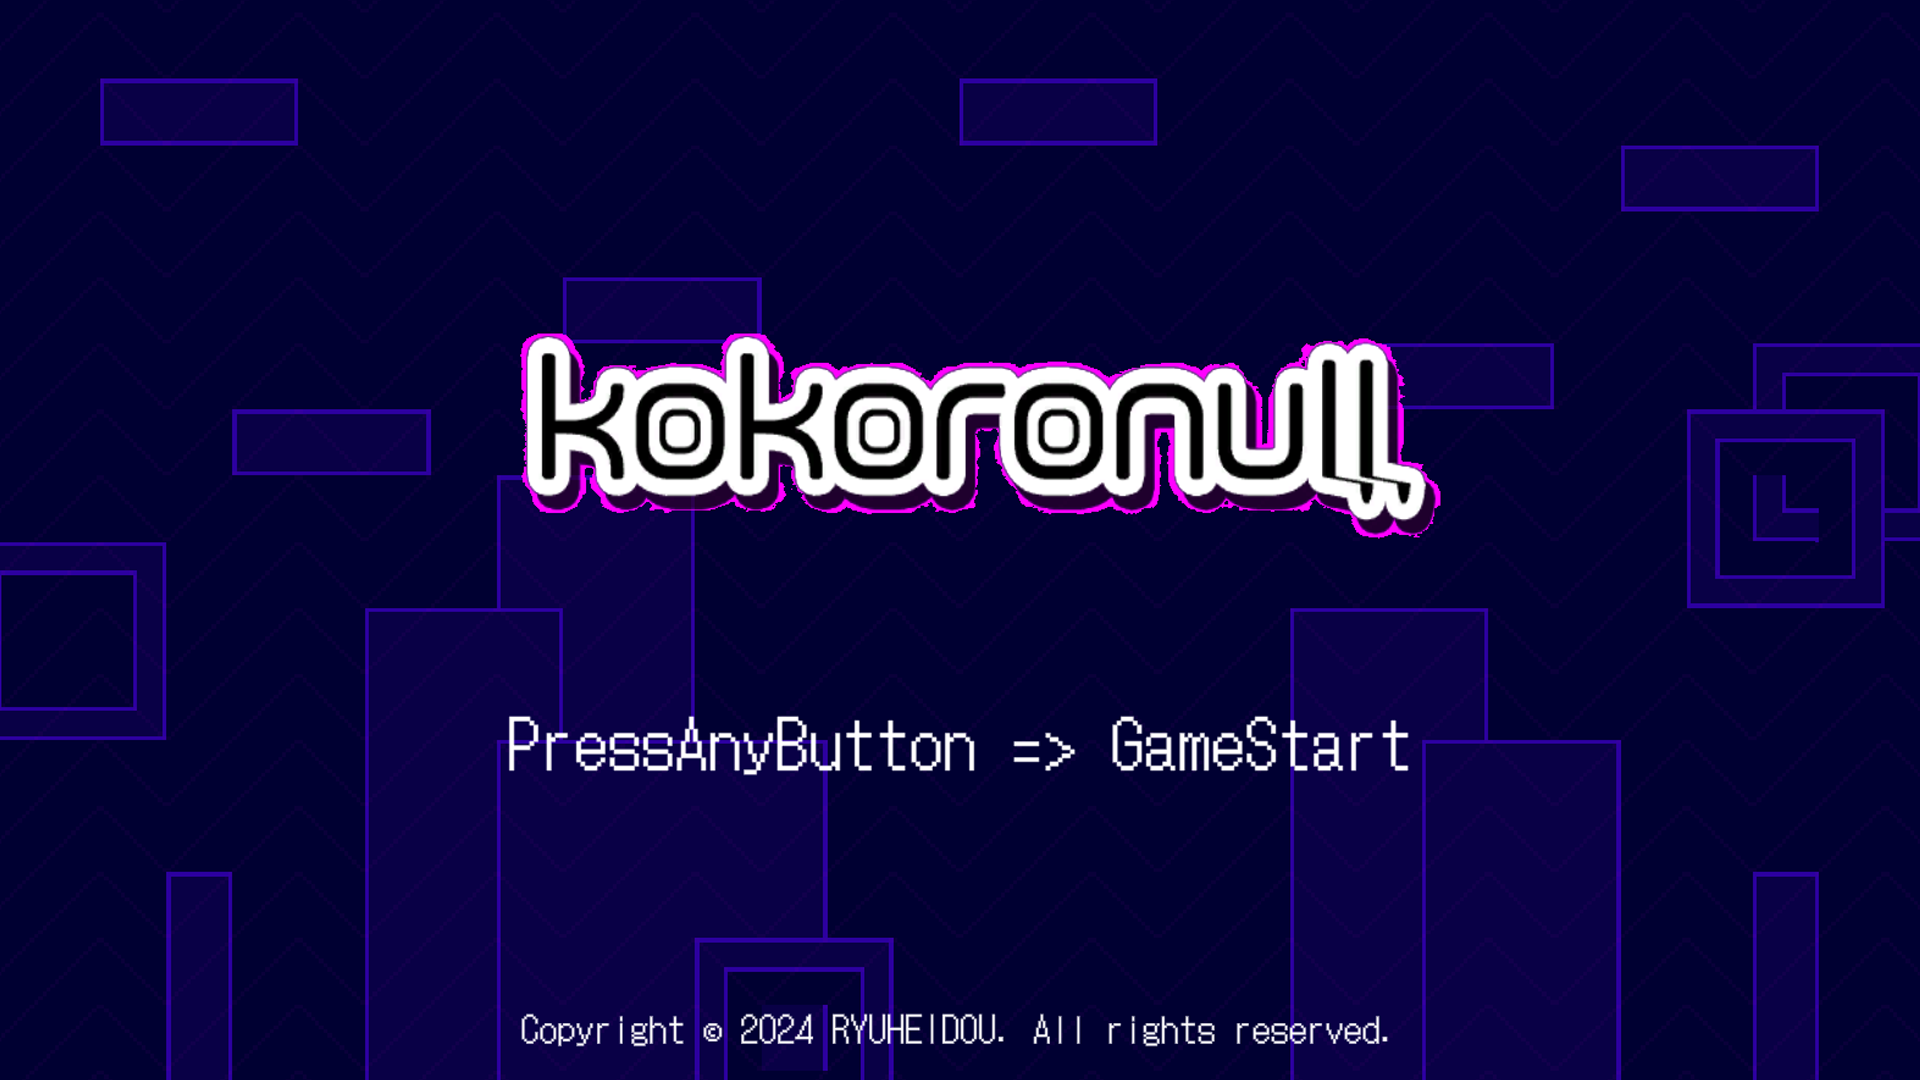 激ムズアクションゲーム「KOKORONULL」のスクリーンショット画像